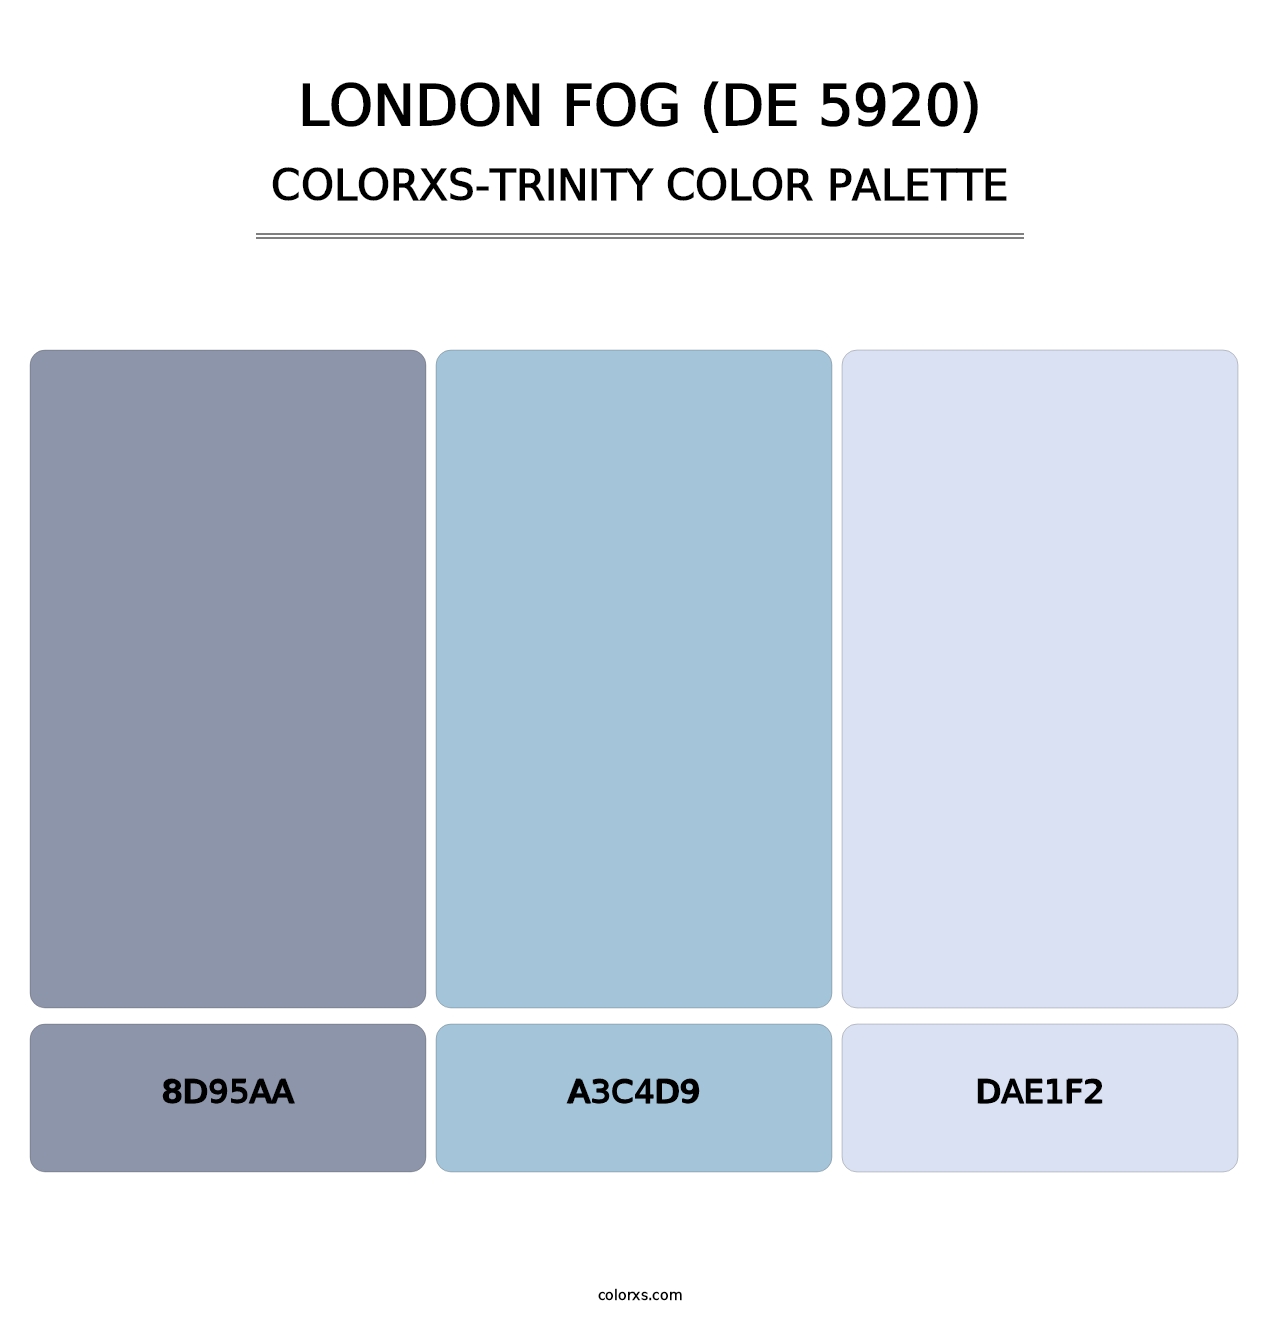 London Fog (DE 5920) - Colorxs Trinity Palette